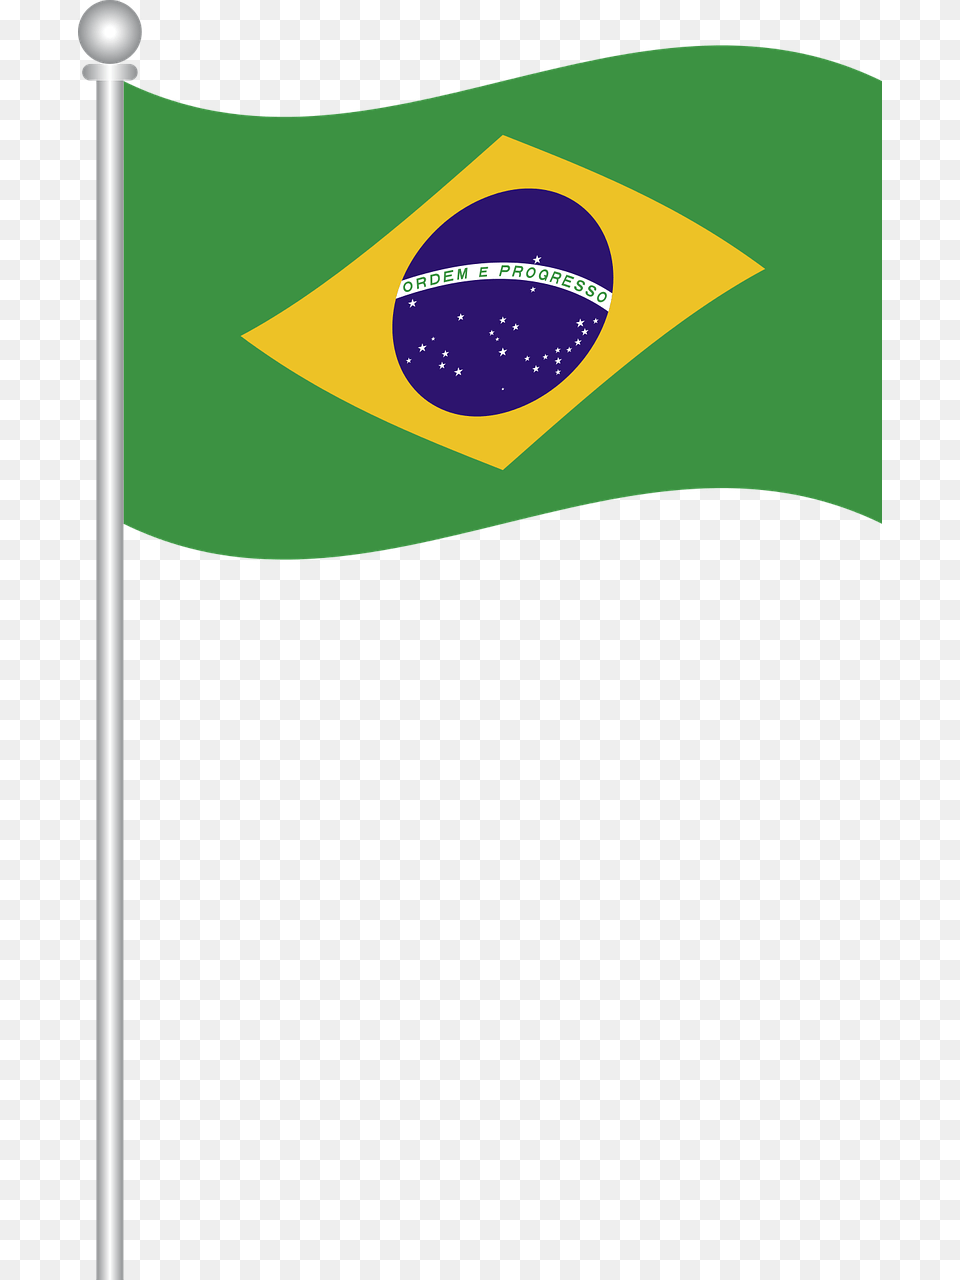 Bandeira Do Brasil Em Vetor, Flag, Brazil Flag Free Png